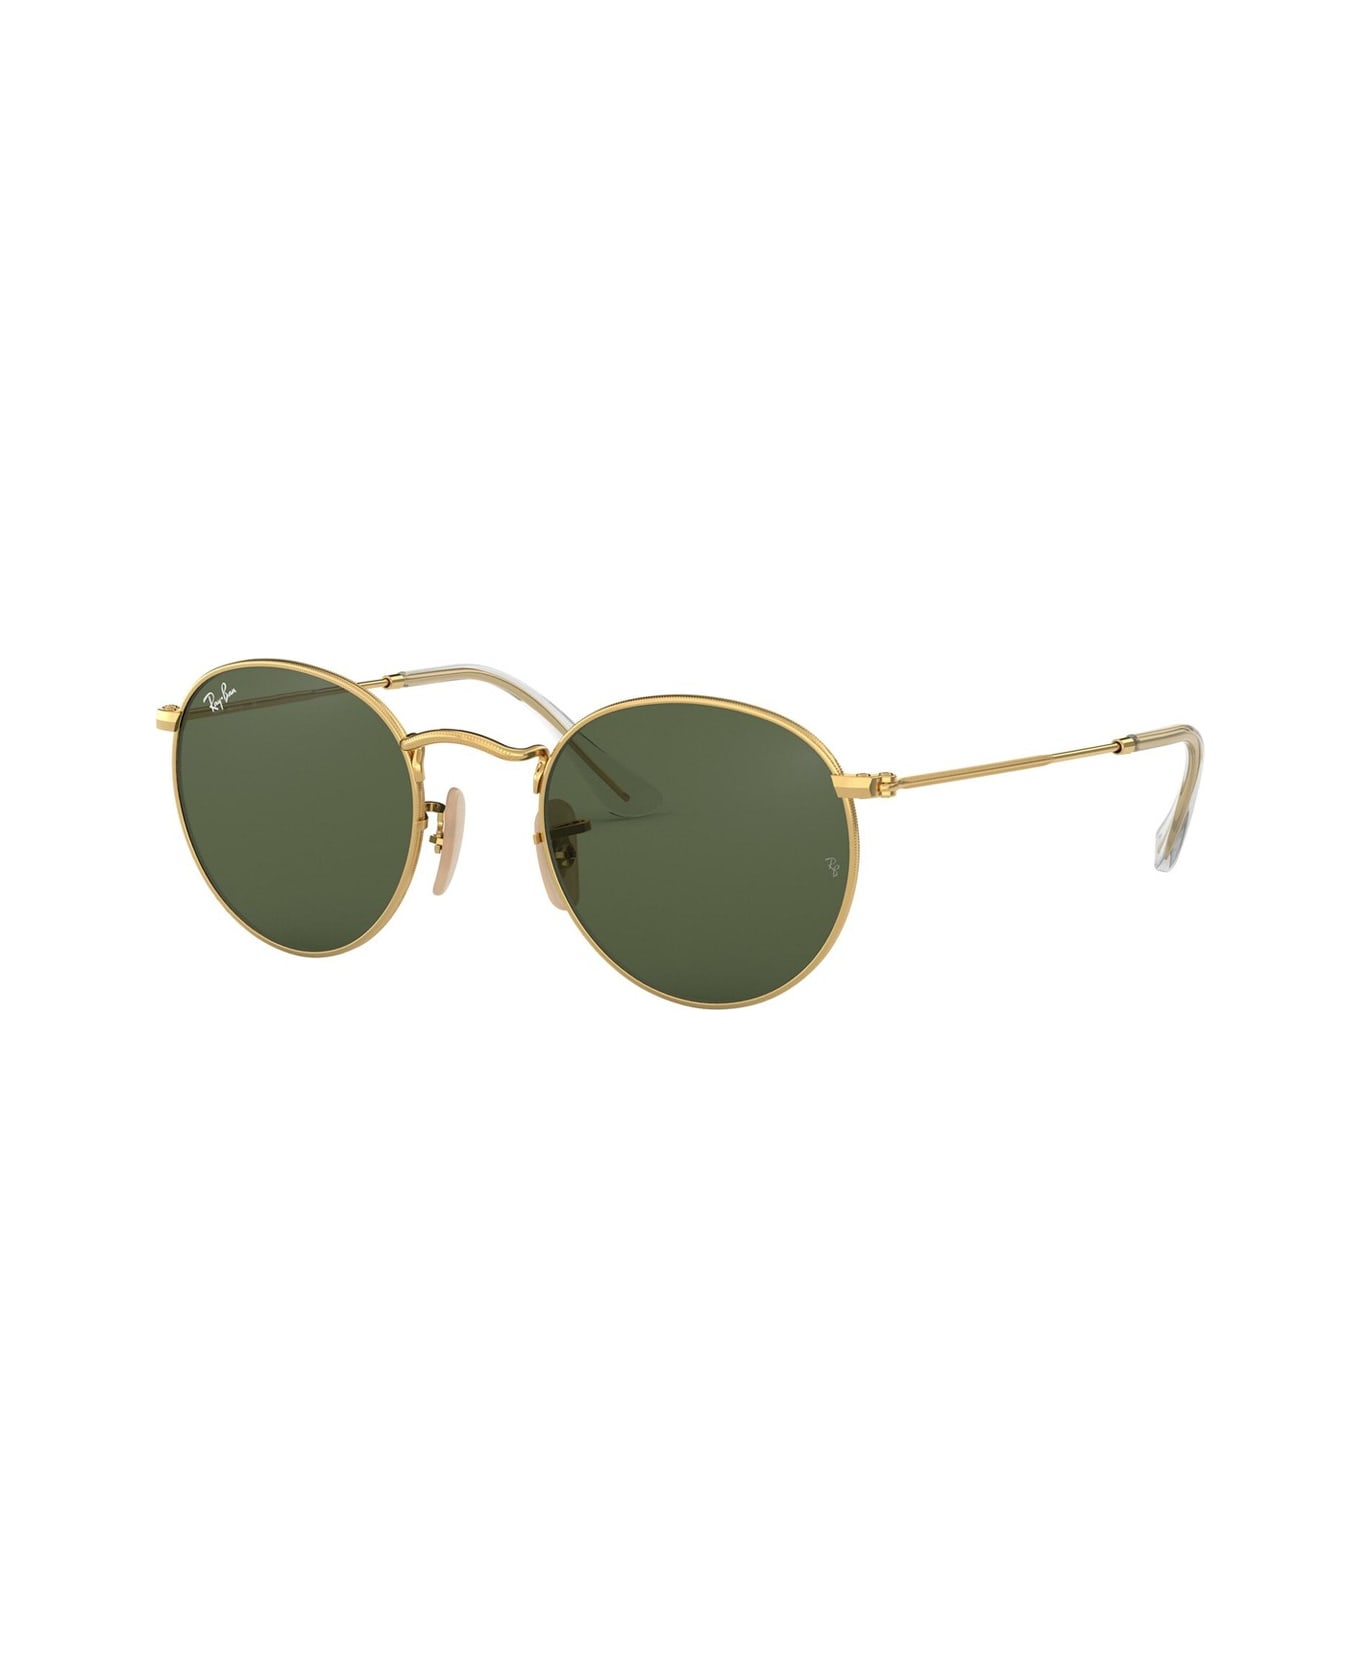 Ray-Ban Rb3447 Sunglasses - Oro サングラス